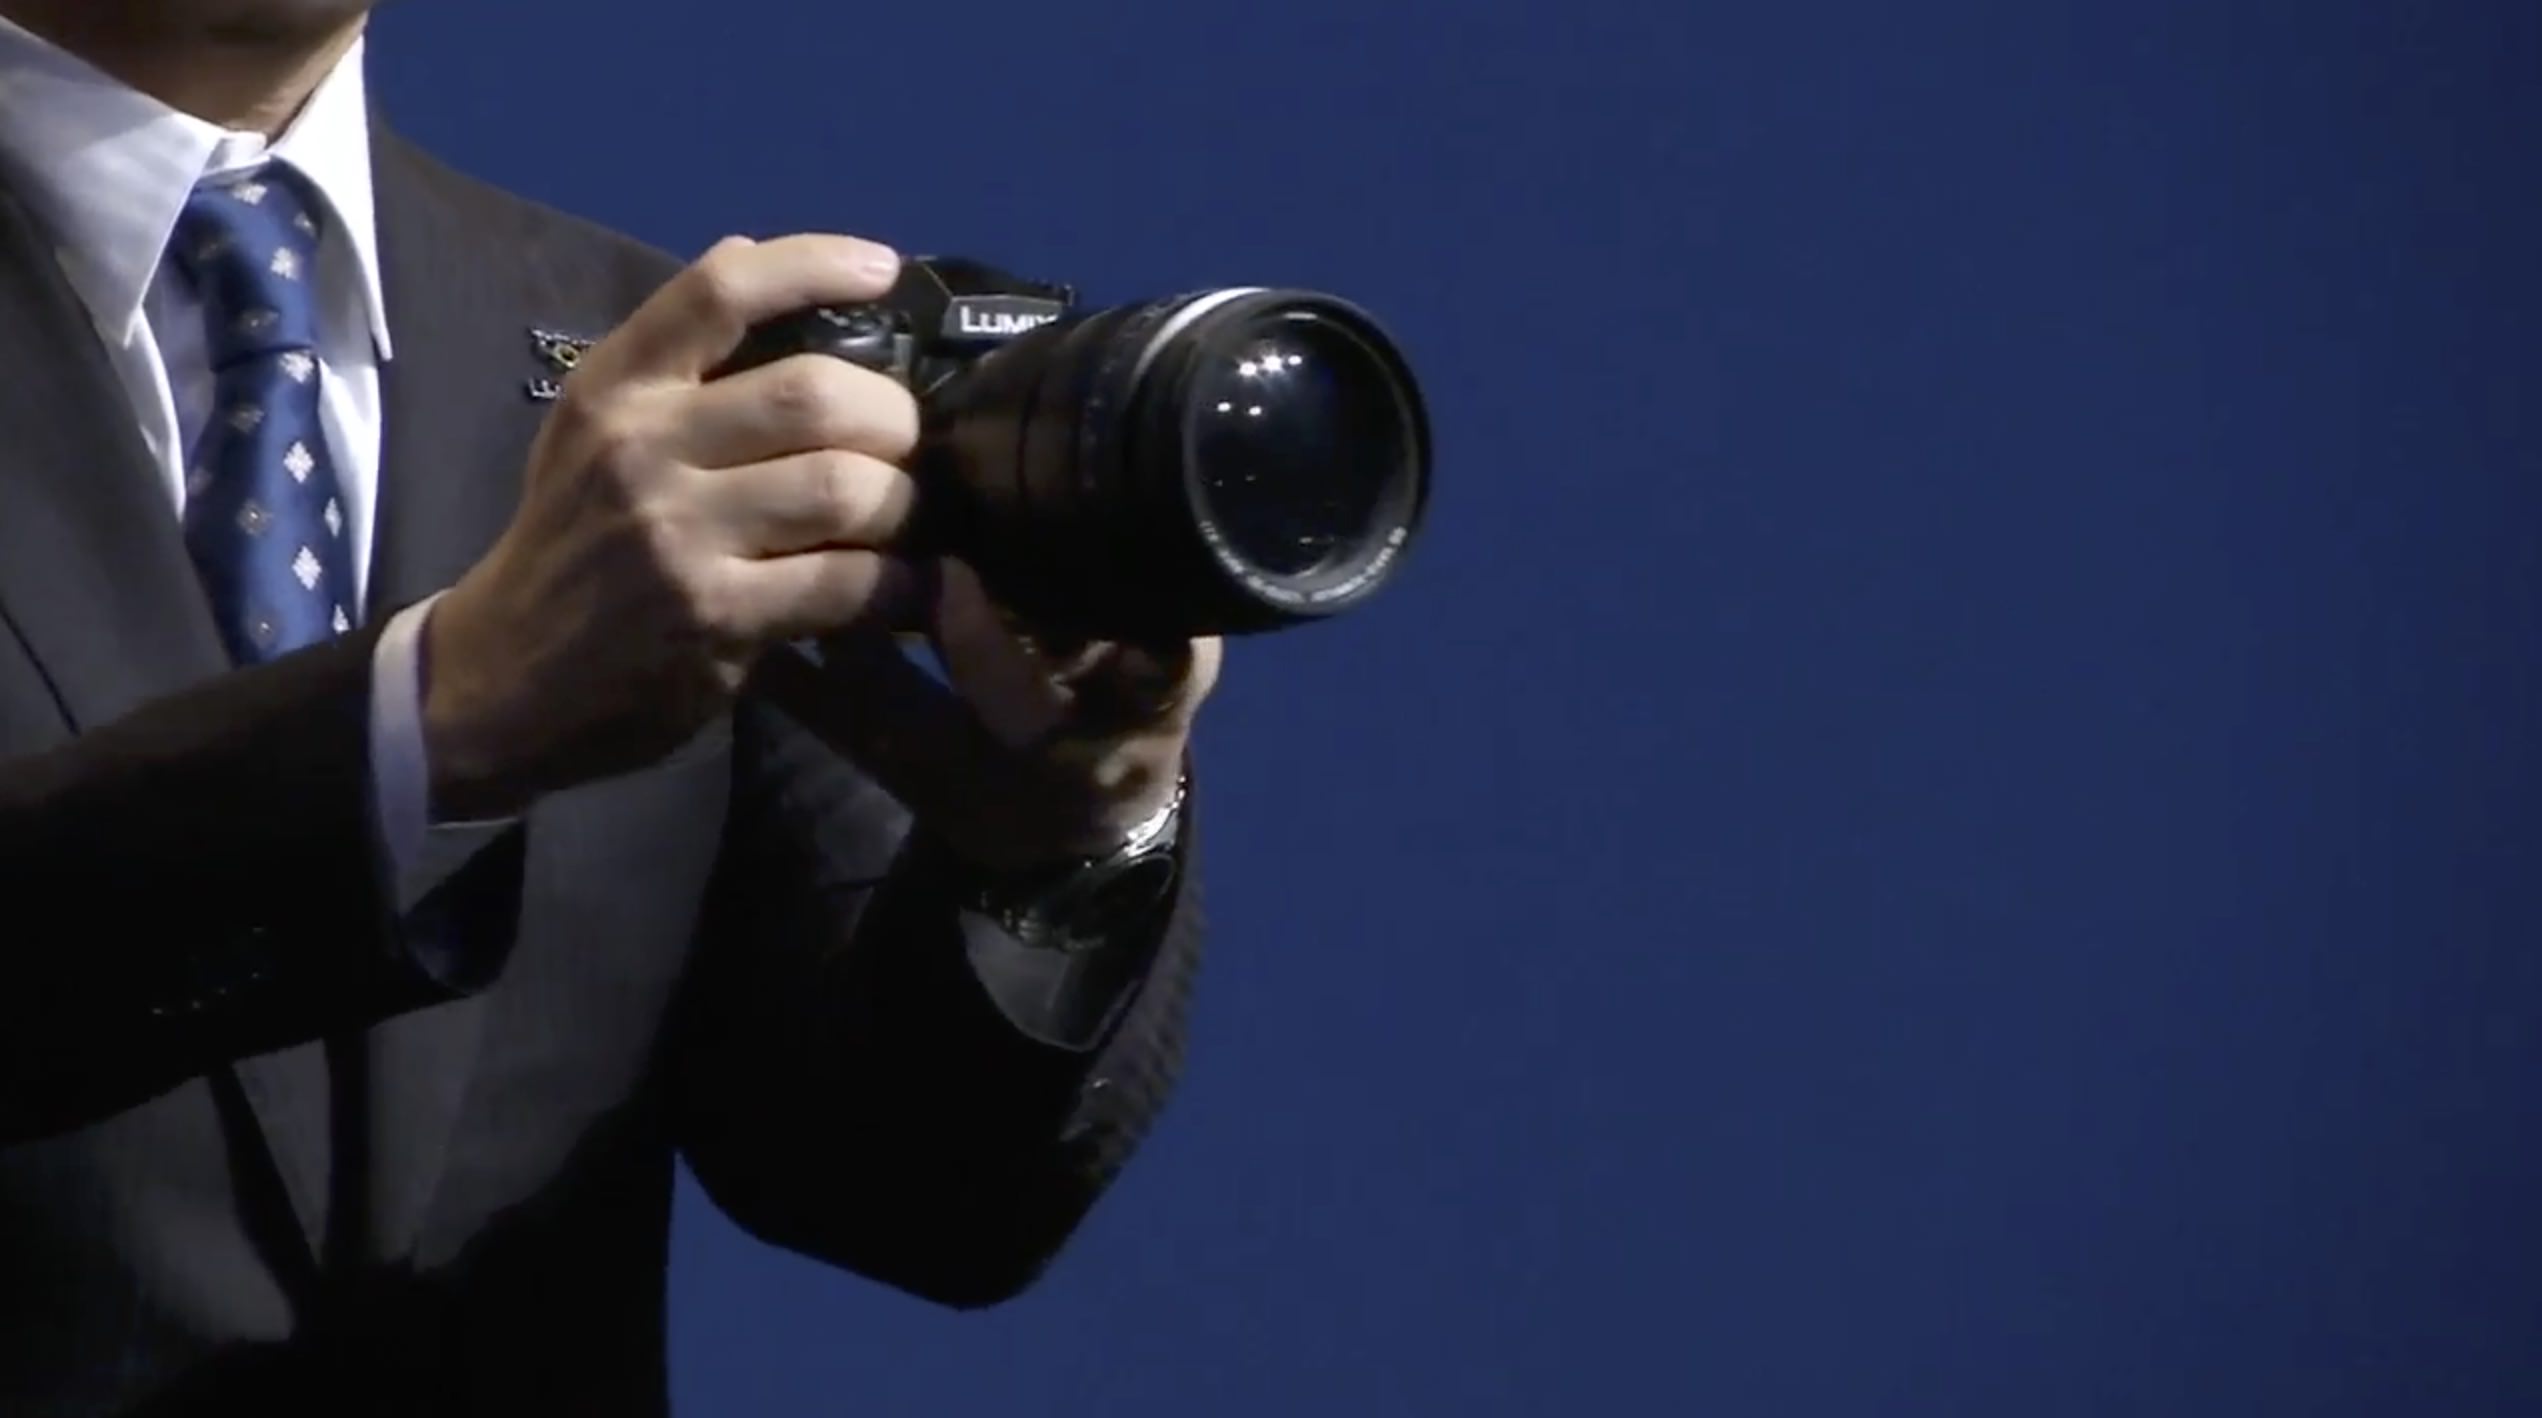 Panasonic Leica DG Vario-Summilux 10-25mm f/1.7 lens